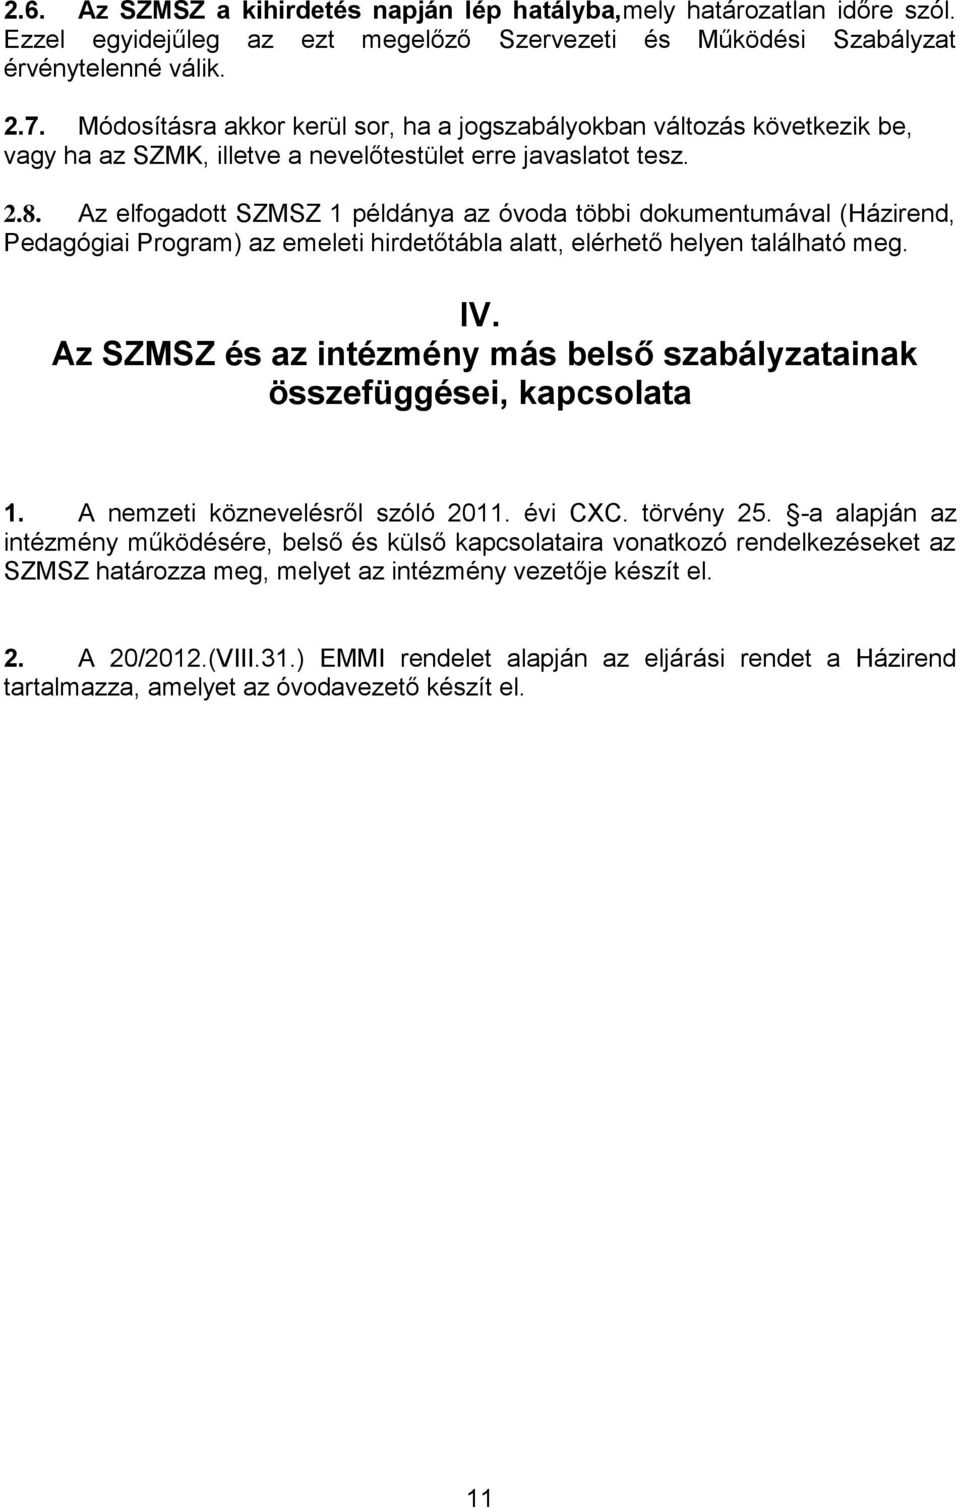 Az elfogadott SZMSZ 1 példánya az óvoda többi dokumentumával (Házirend, Pedagógiai Program) az emeleti hirdetőtábla alatt, elérhető helyen található meg. IV.